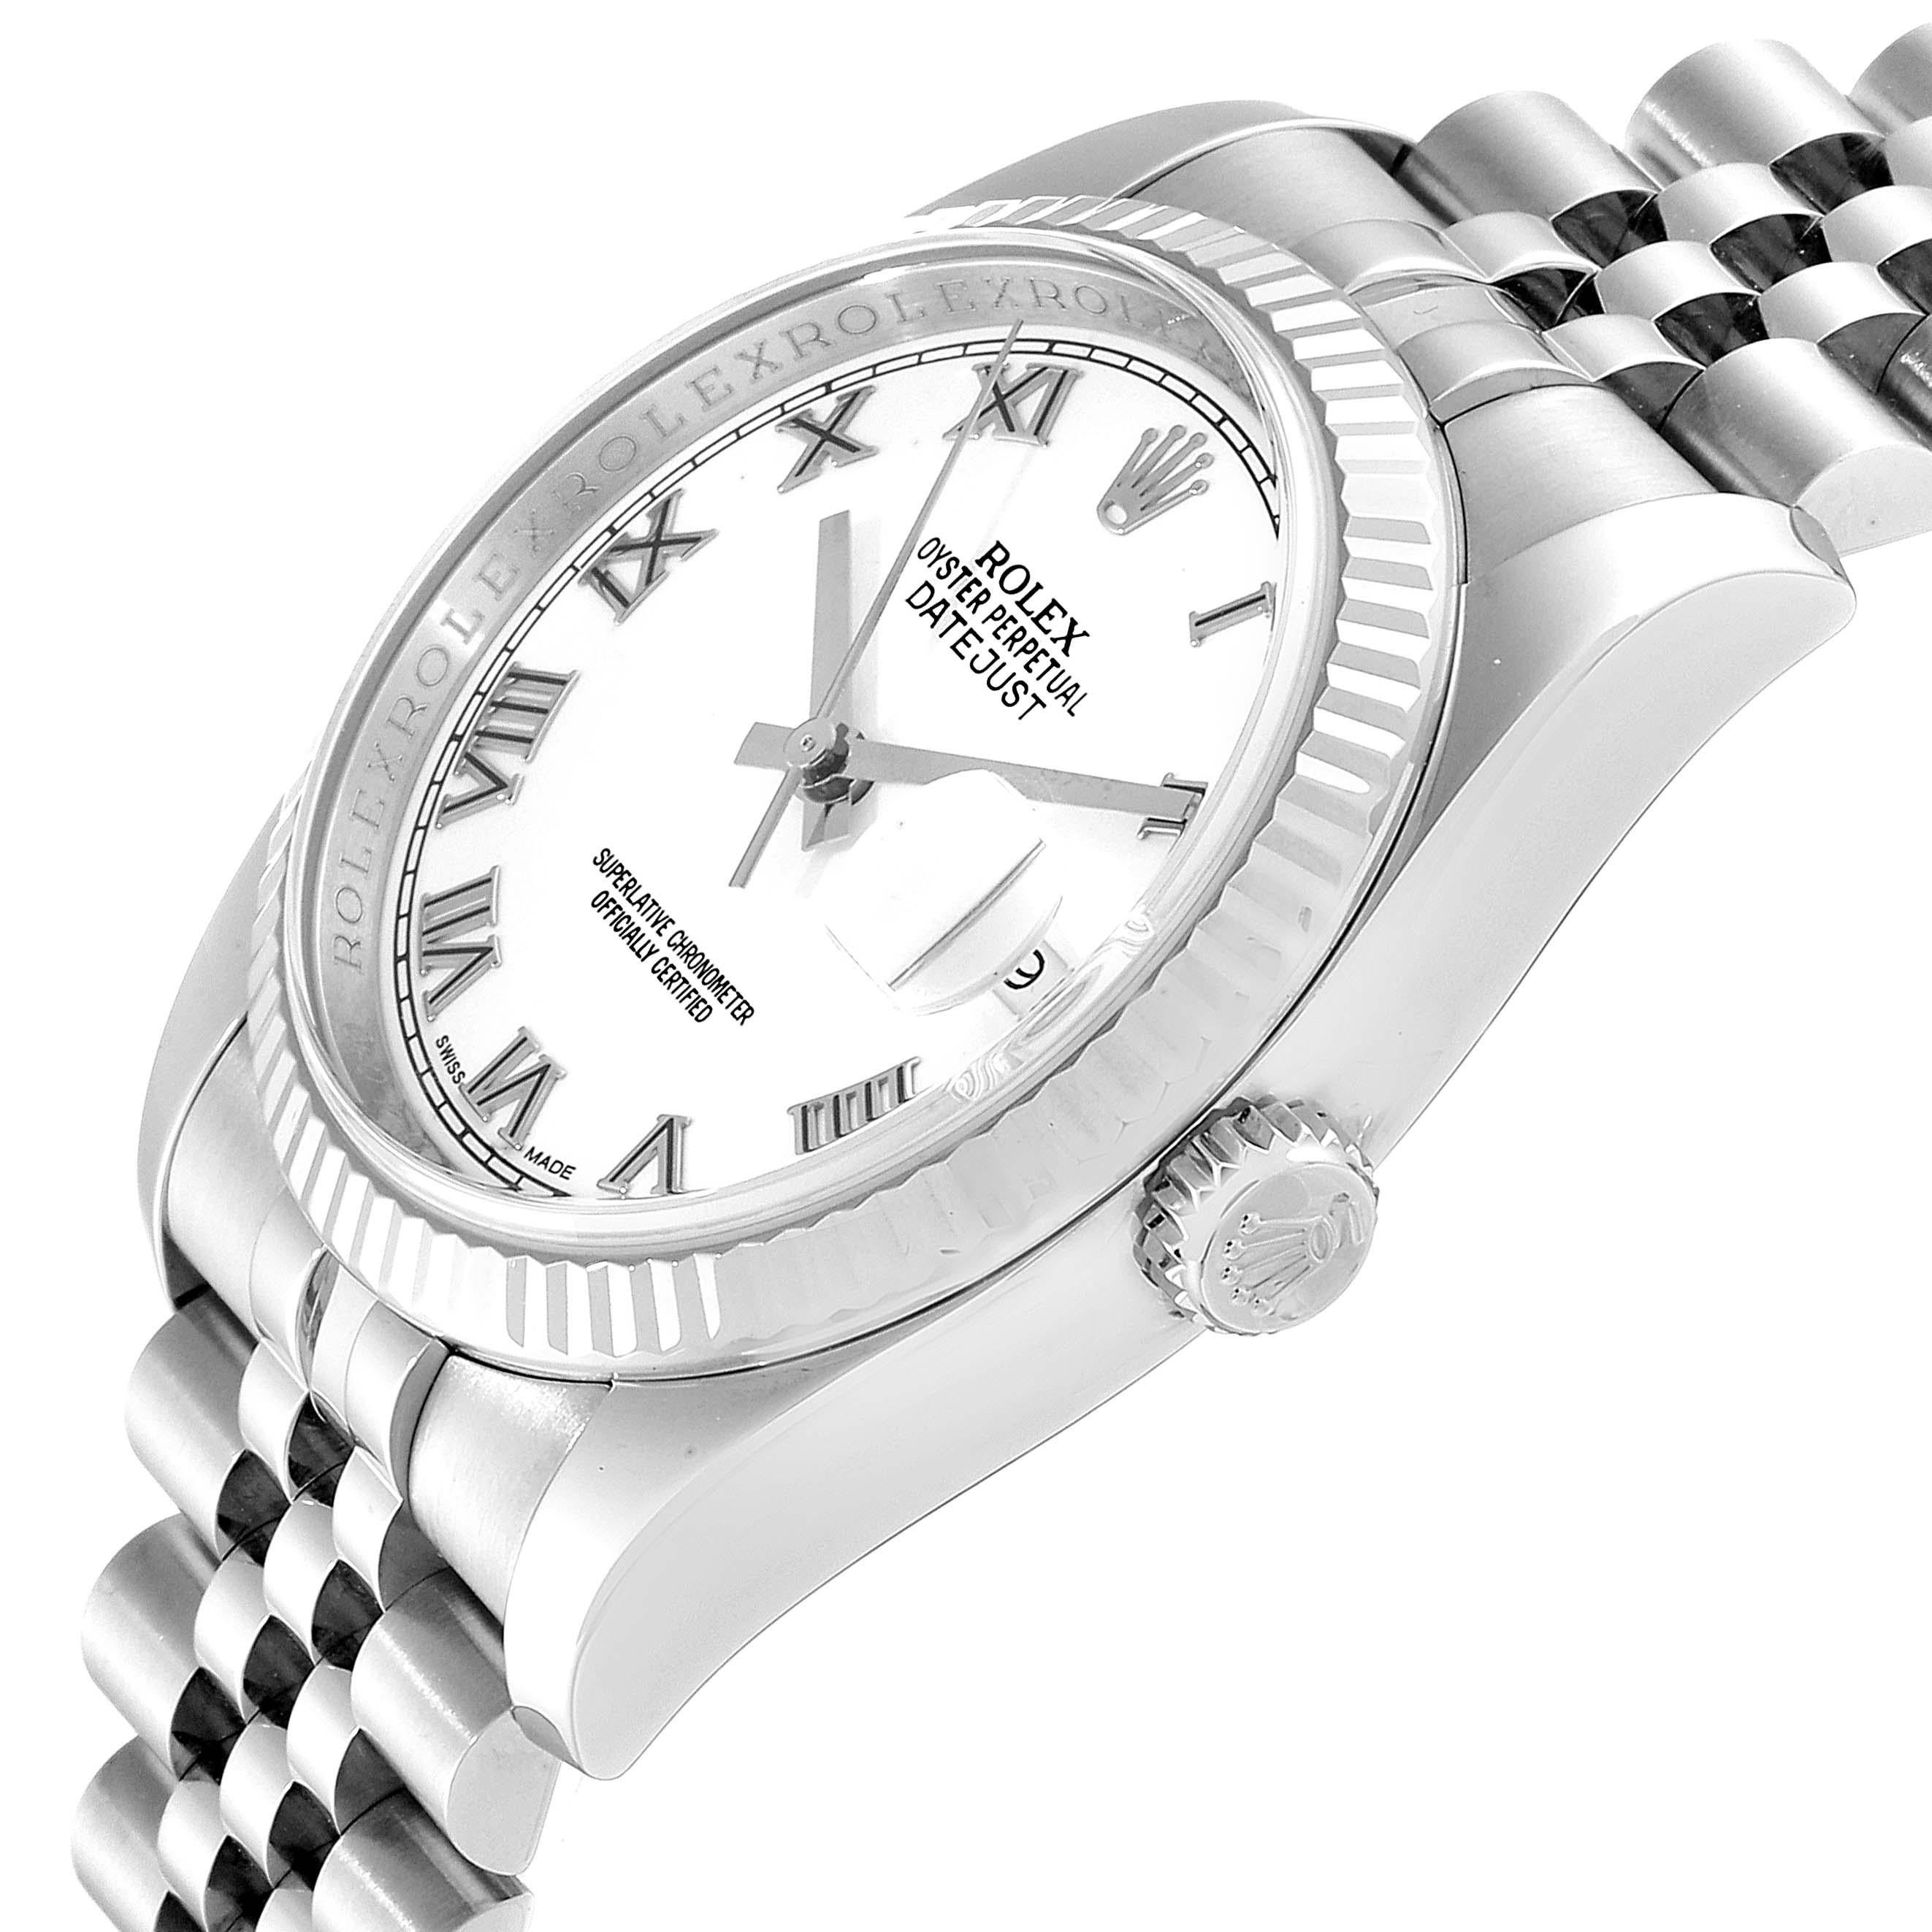 Rolex Datejust Steel White Gold Jubilee Bracelet Men's Watch 116234 For Sale 2